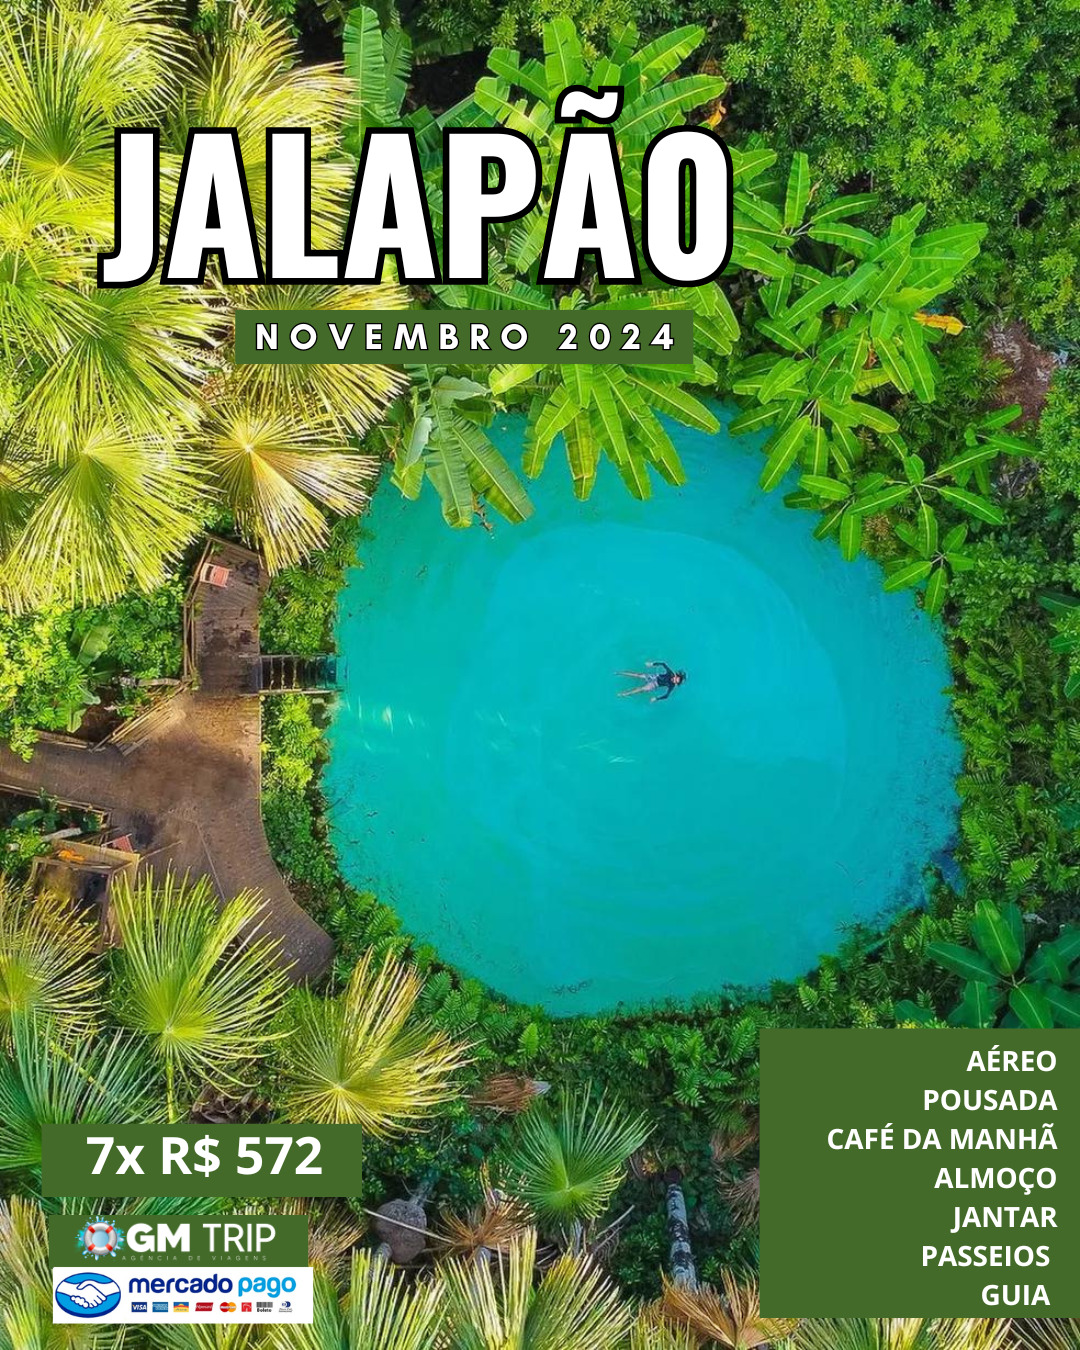 JALAPÃO - NOVEMBRO 2024